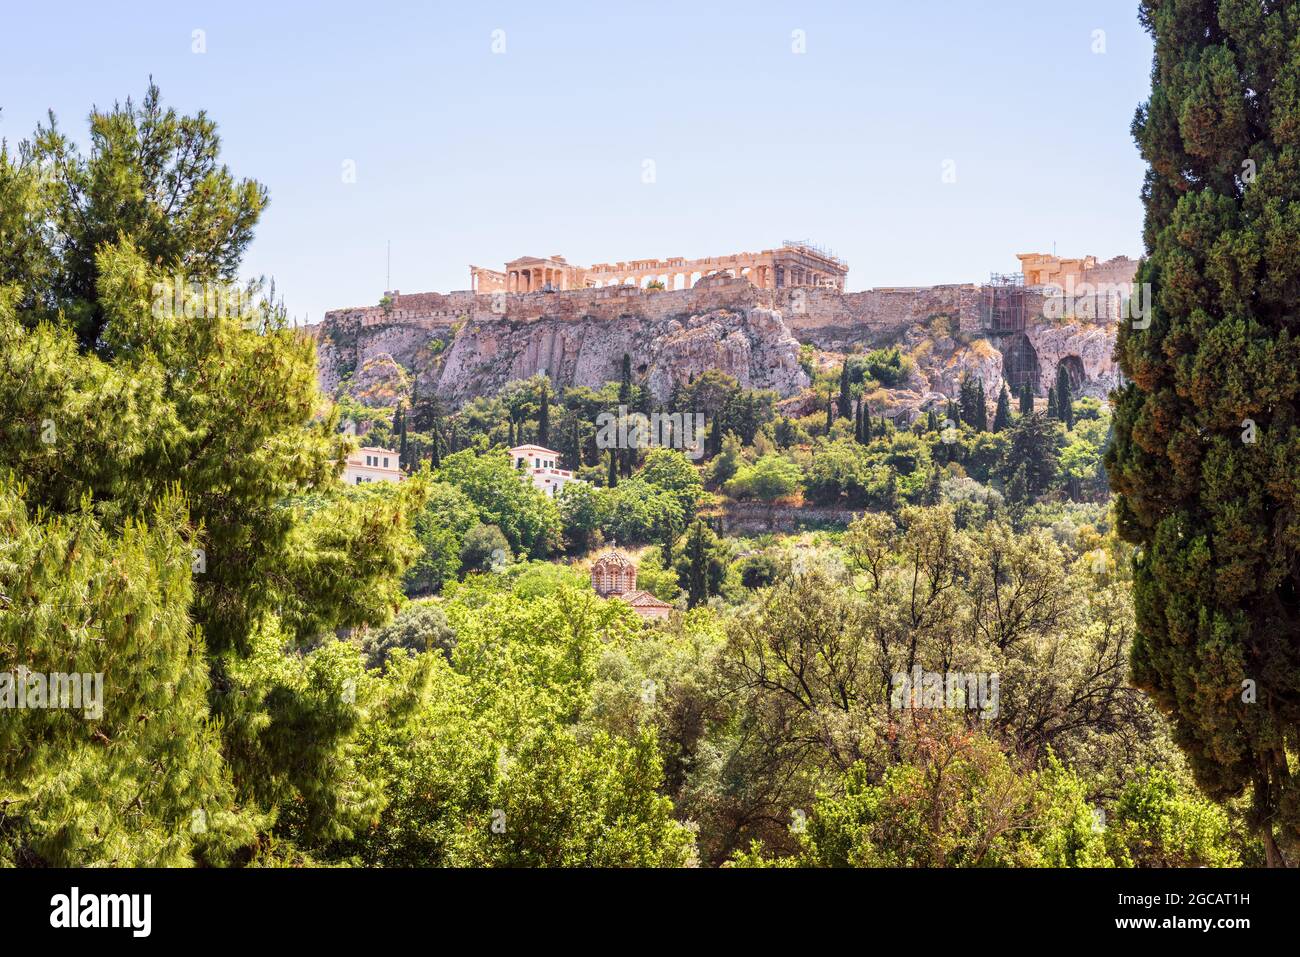 Landschaftlich reizvolle Ansicht der Akropolis von der alten Agora, Athen, Griechenland, Europa. Dieses Hotel ist das Wahrzeichen Athens. Stadtlandschaft mit antiken griechischen Ruinen in Ath Stockfoto